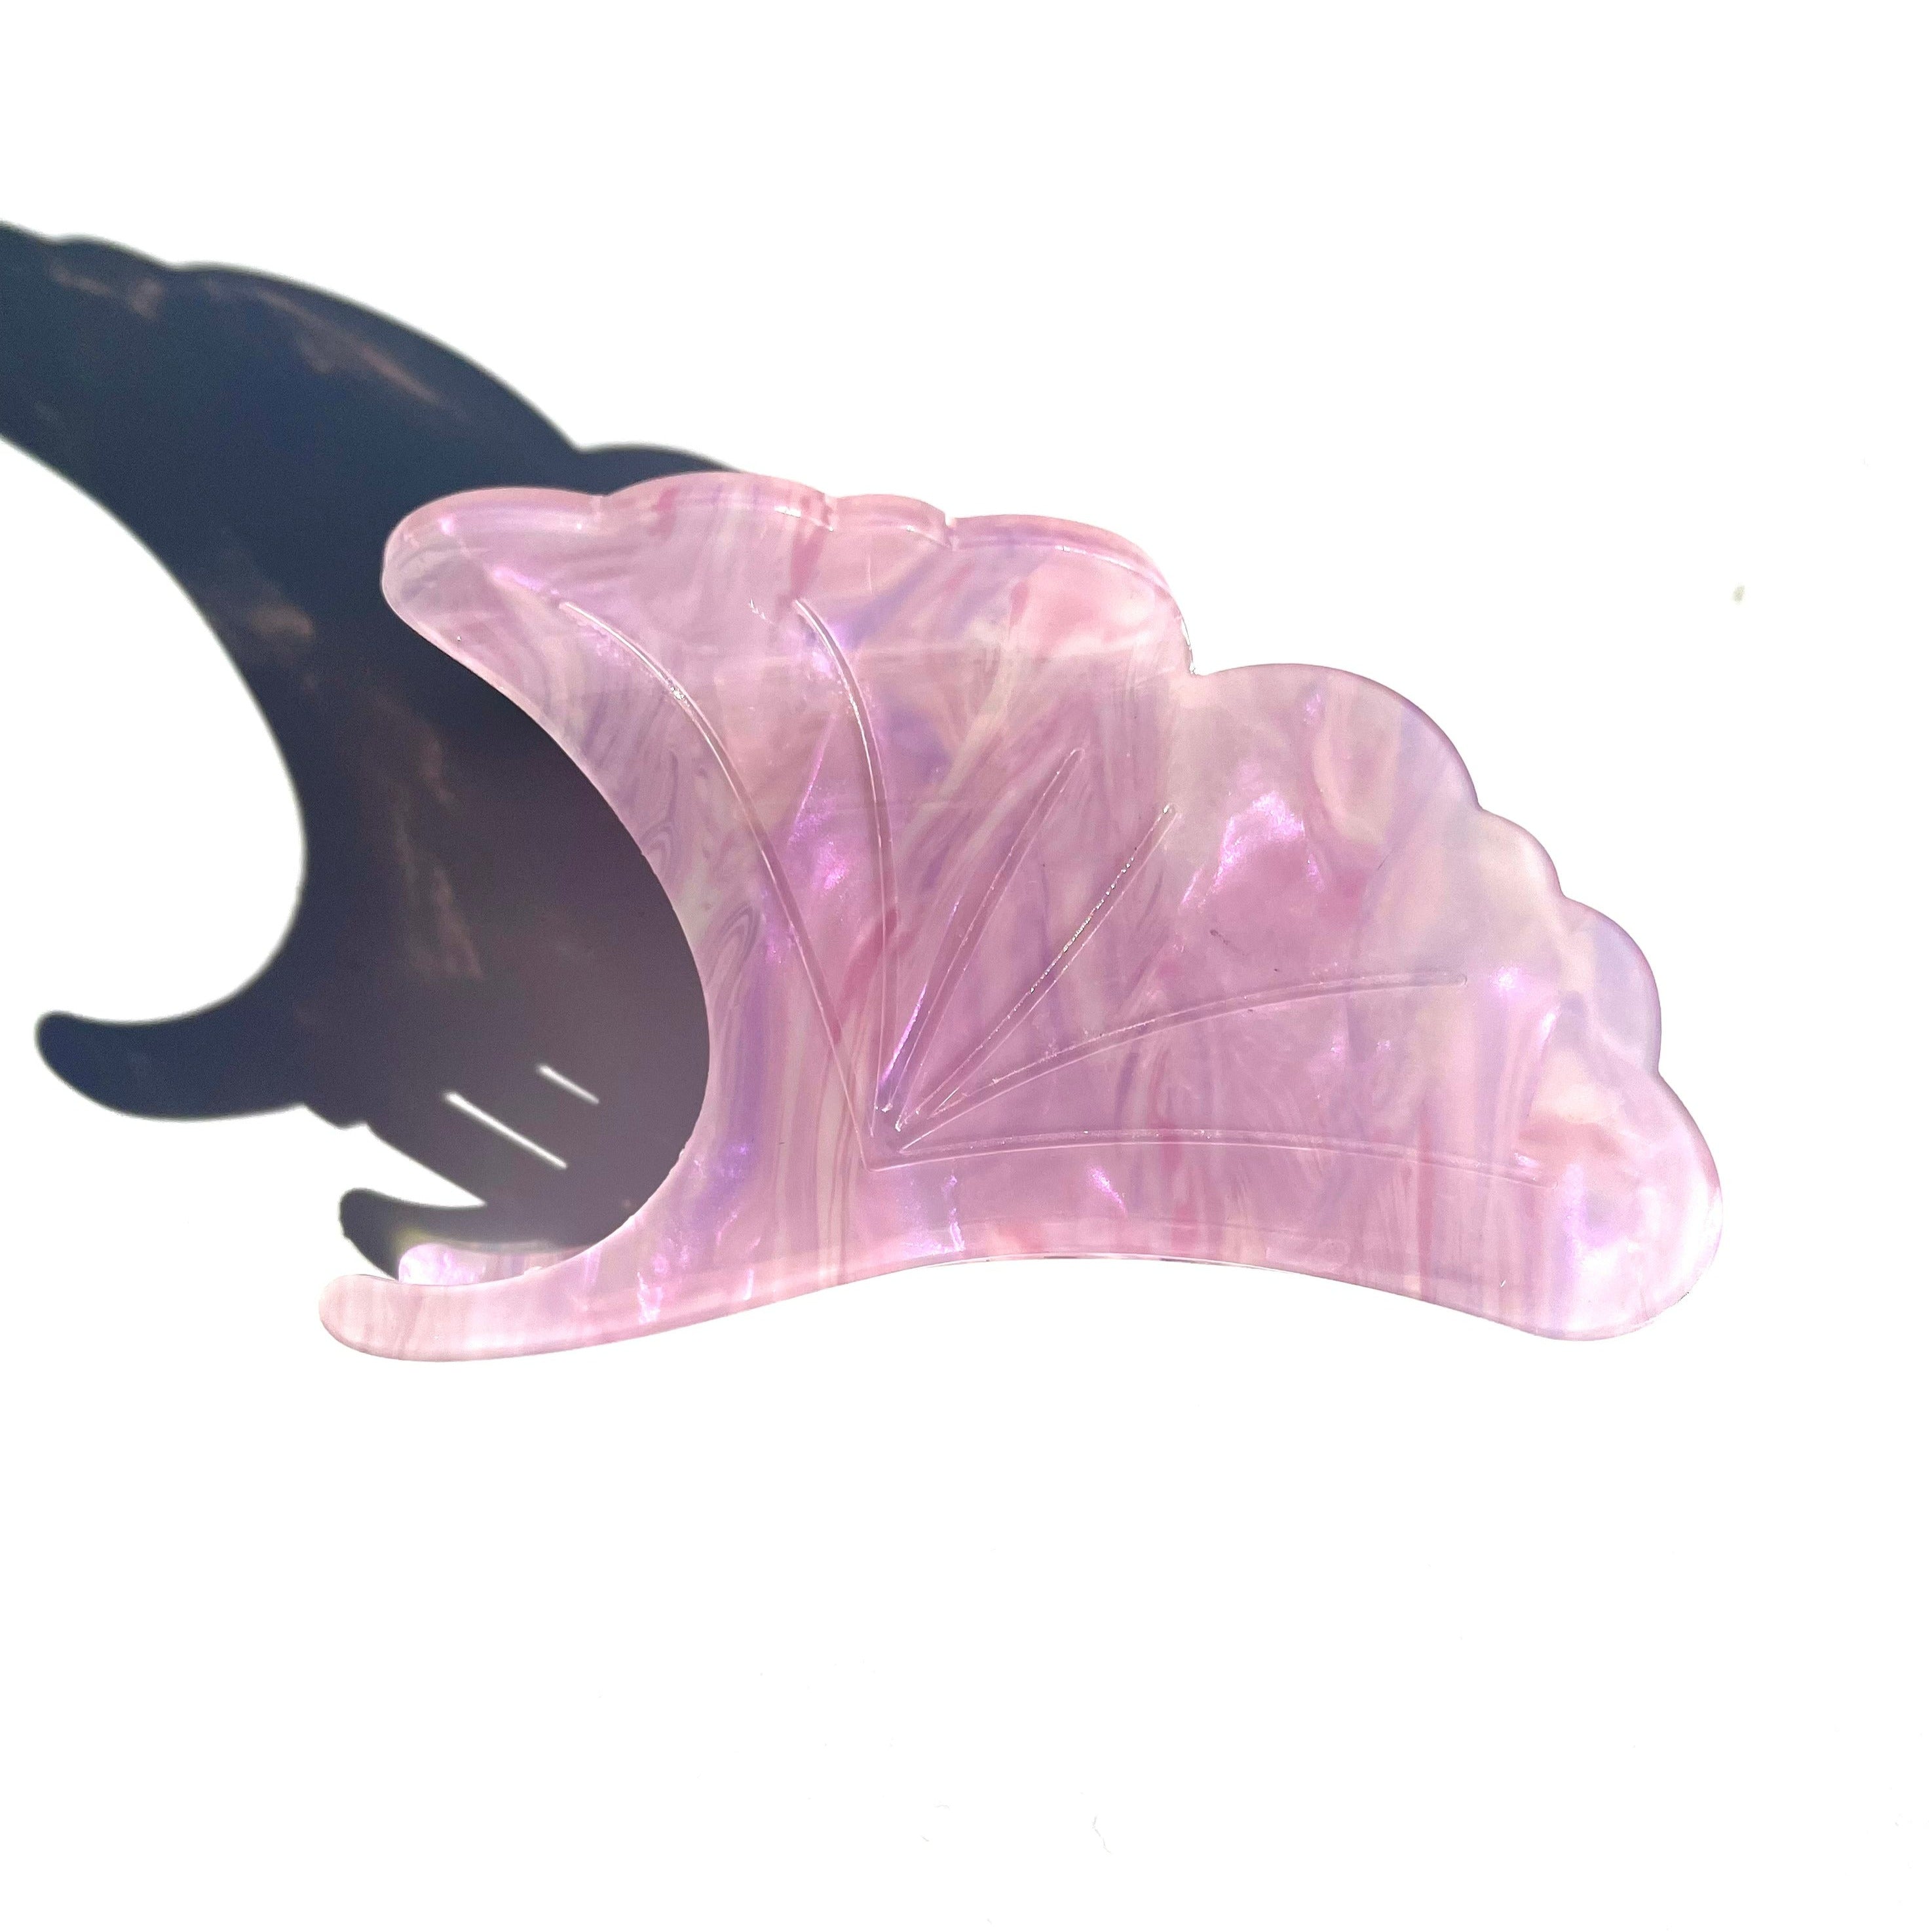 Ginkgo biloba claw within purple